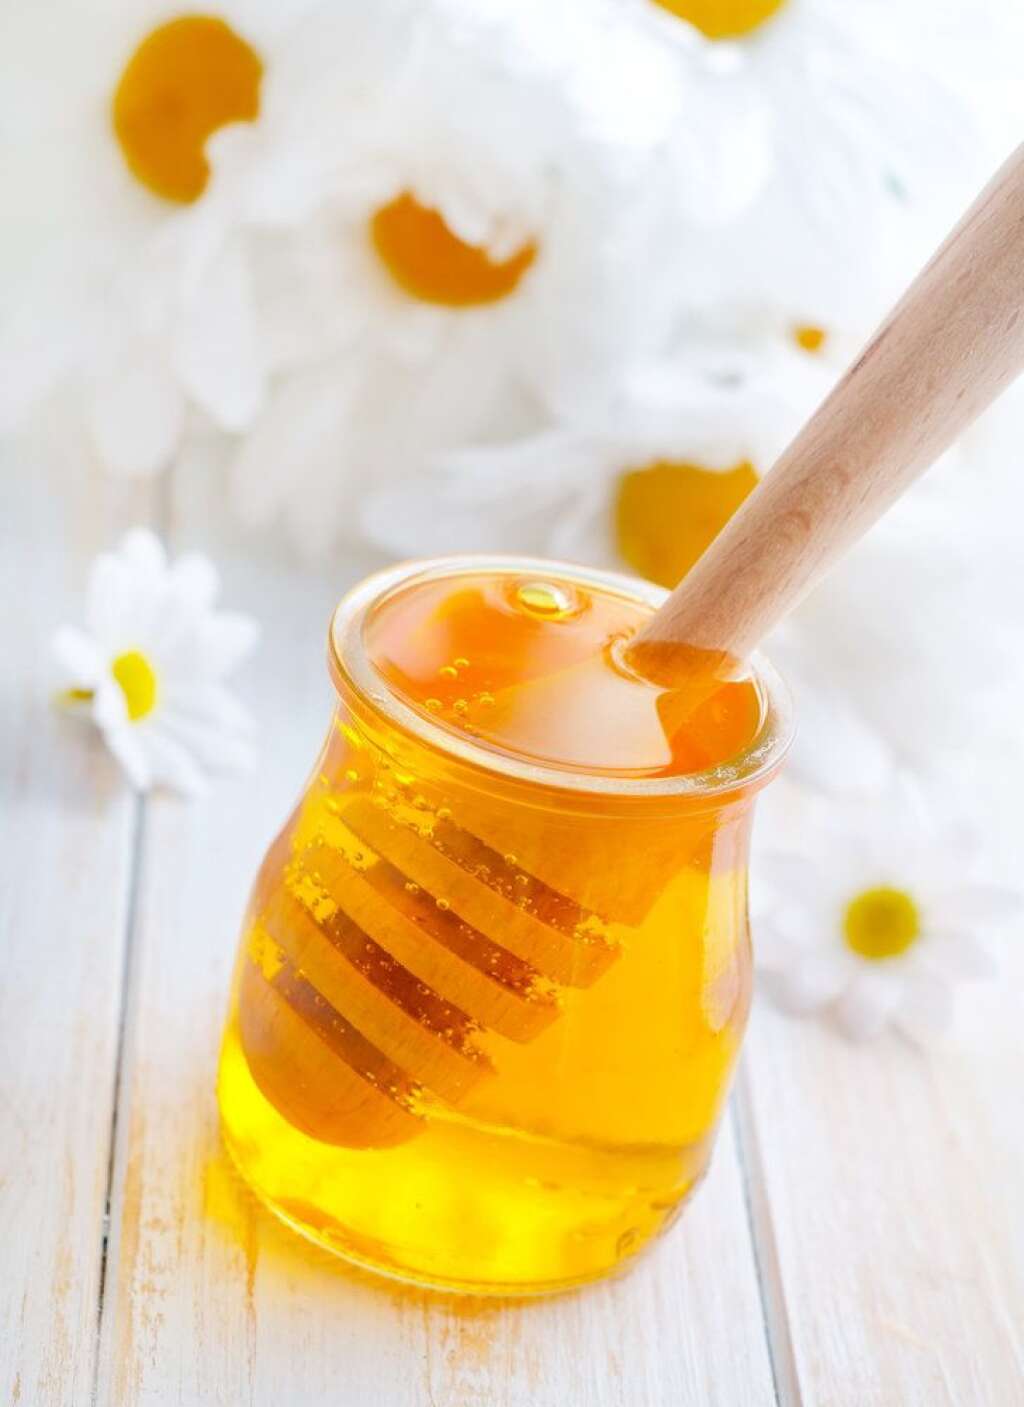 Posca: un remède pour se renforcer - Dans l'antiquité romaine, ce remède appelé posca était utilisé pour ne pas tomber malade et donner de l'énergie. Allonger un peu de vinaigre de cidre avec de l'eau et adoucissez la solution avec un peu de miel. Le miel a des vertus énergisantes et le vinaigre est un excellent antiseptique.  À prendre tous les matins entre Noël et le Nouvel An.